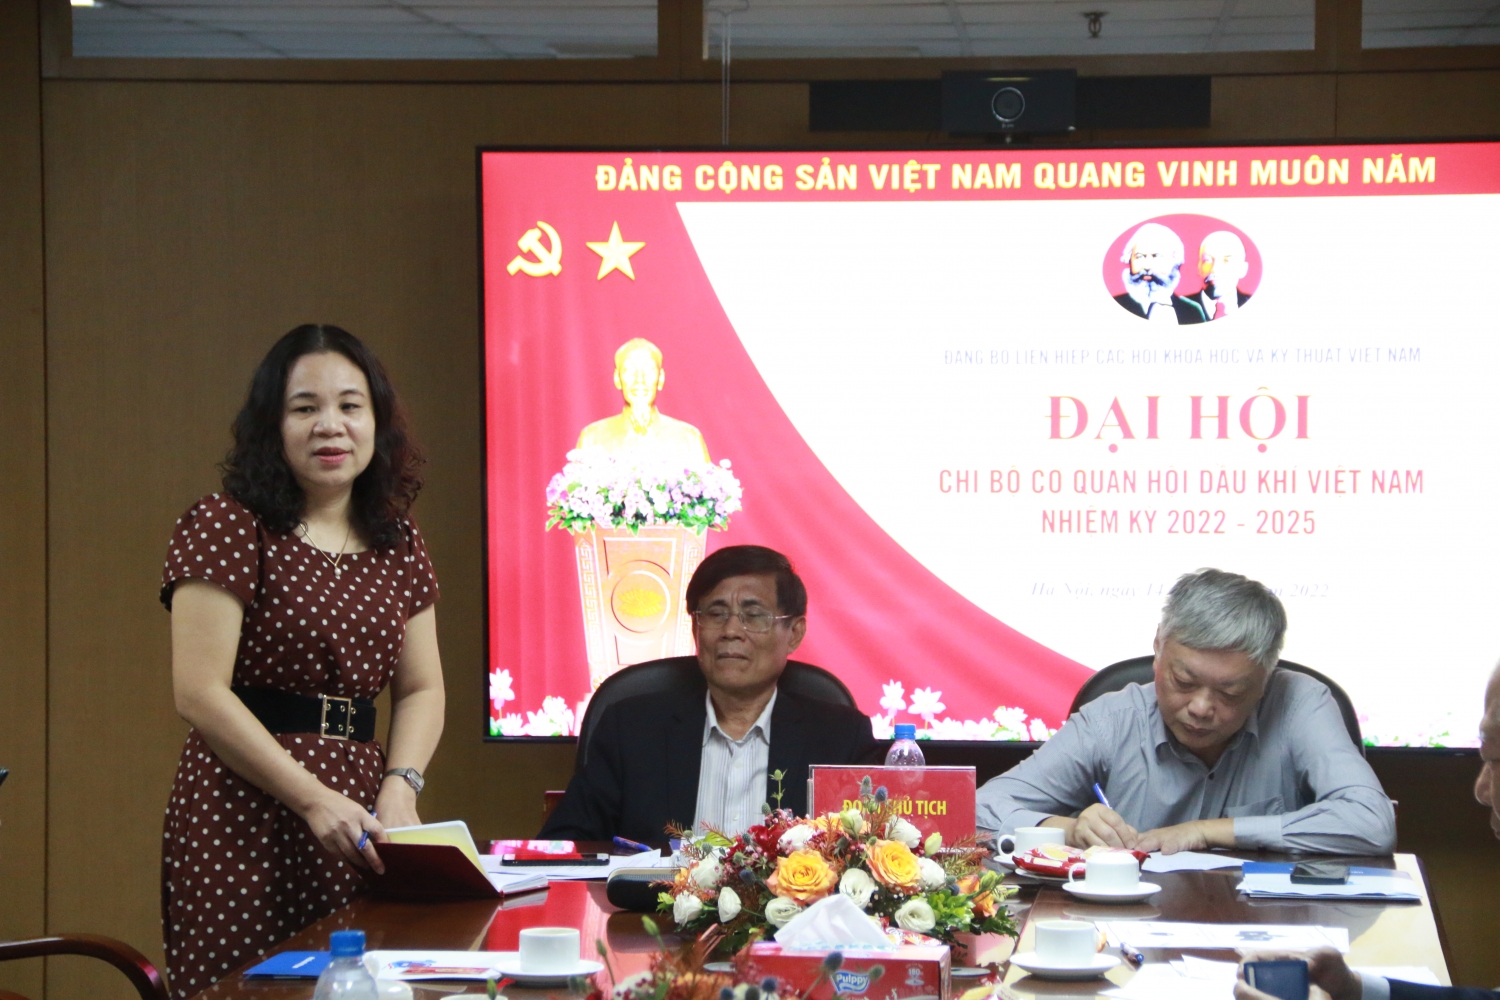 Đại hội Chi bộ Cơ quan Hội Dầu khí Việt Nam lần thứ V, nhiệm kỳ 2022-2025